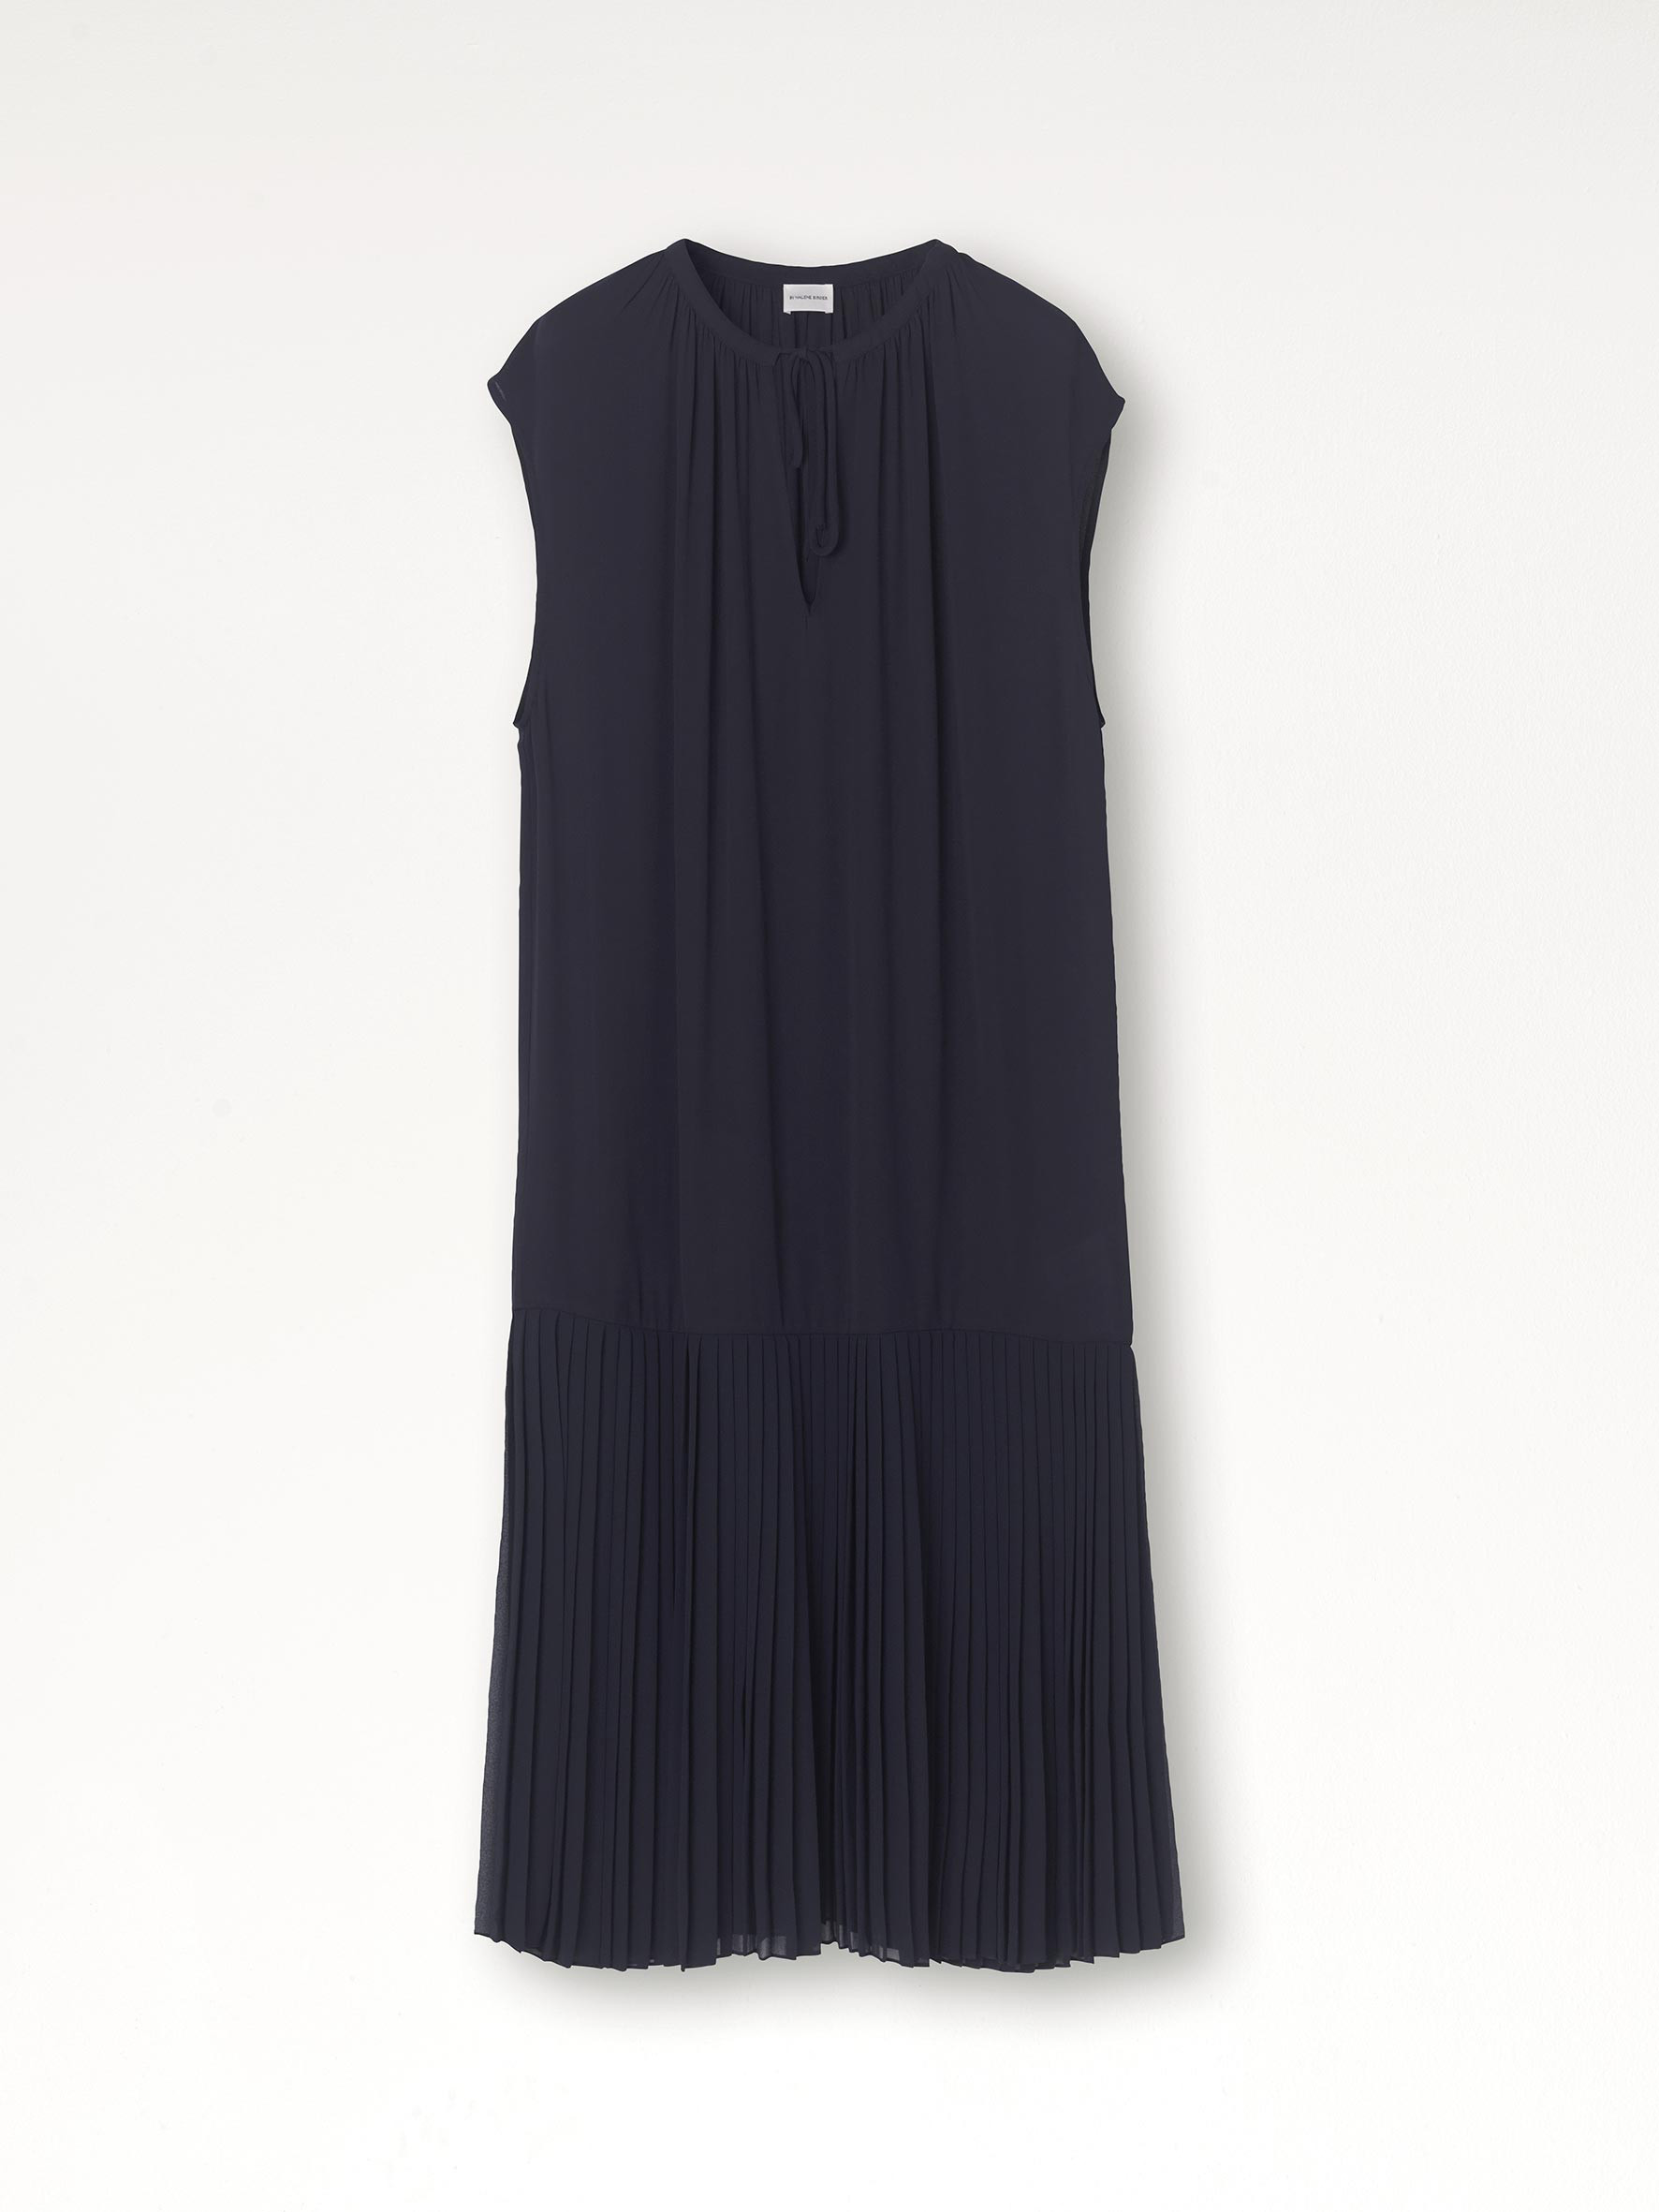 Solomon dress - Buy Dresses online